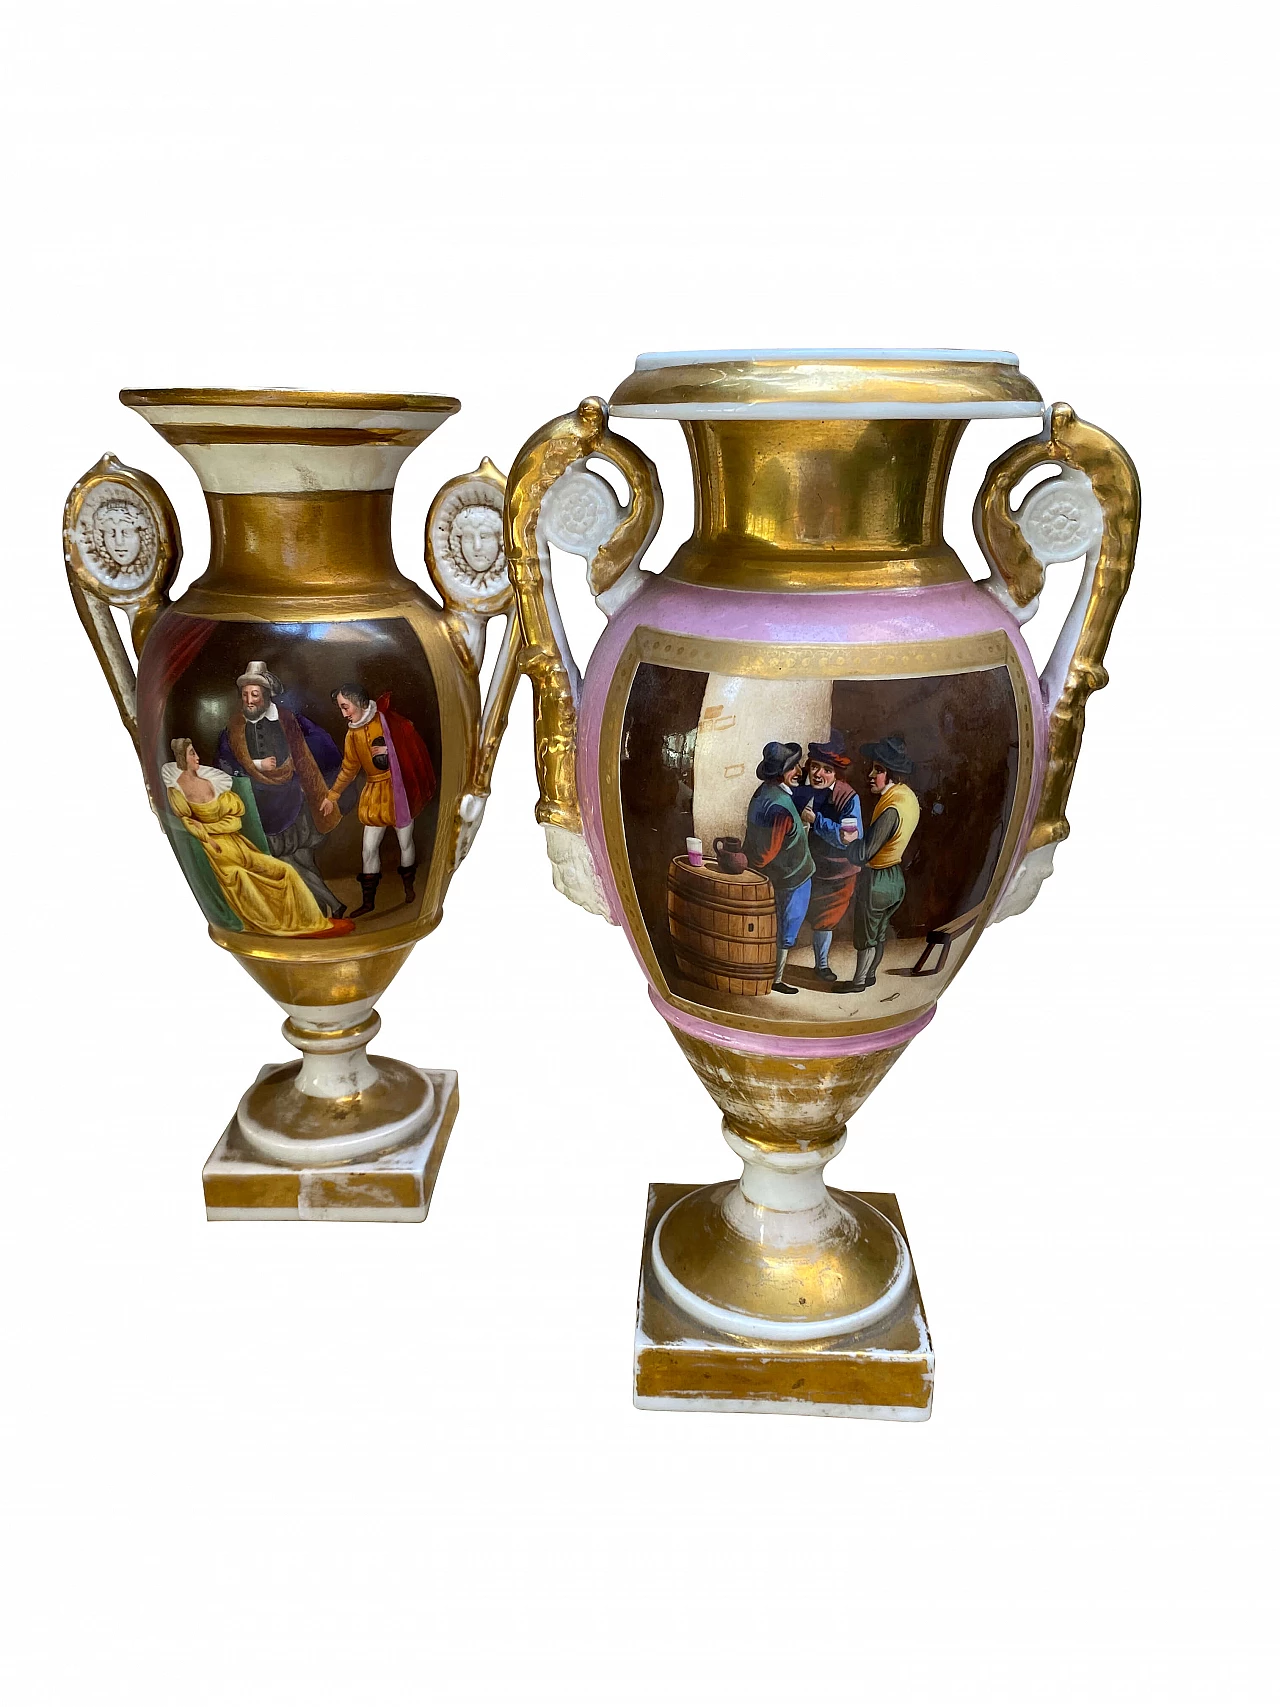 Pair of Neapolitan vases, 19th century 1255930